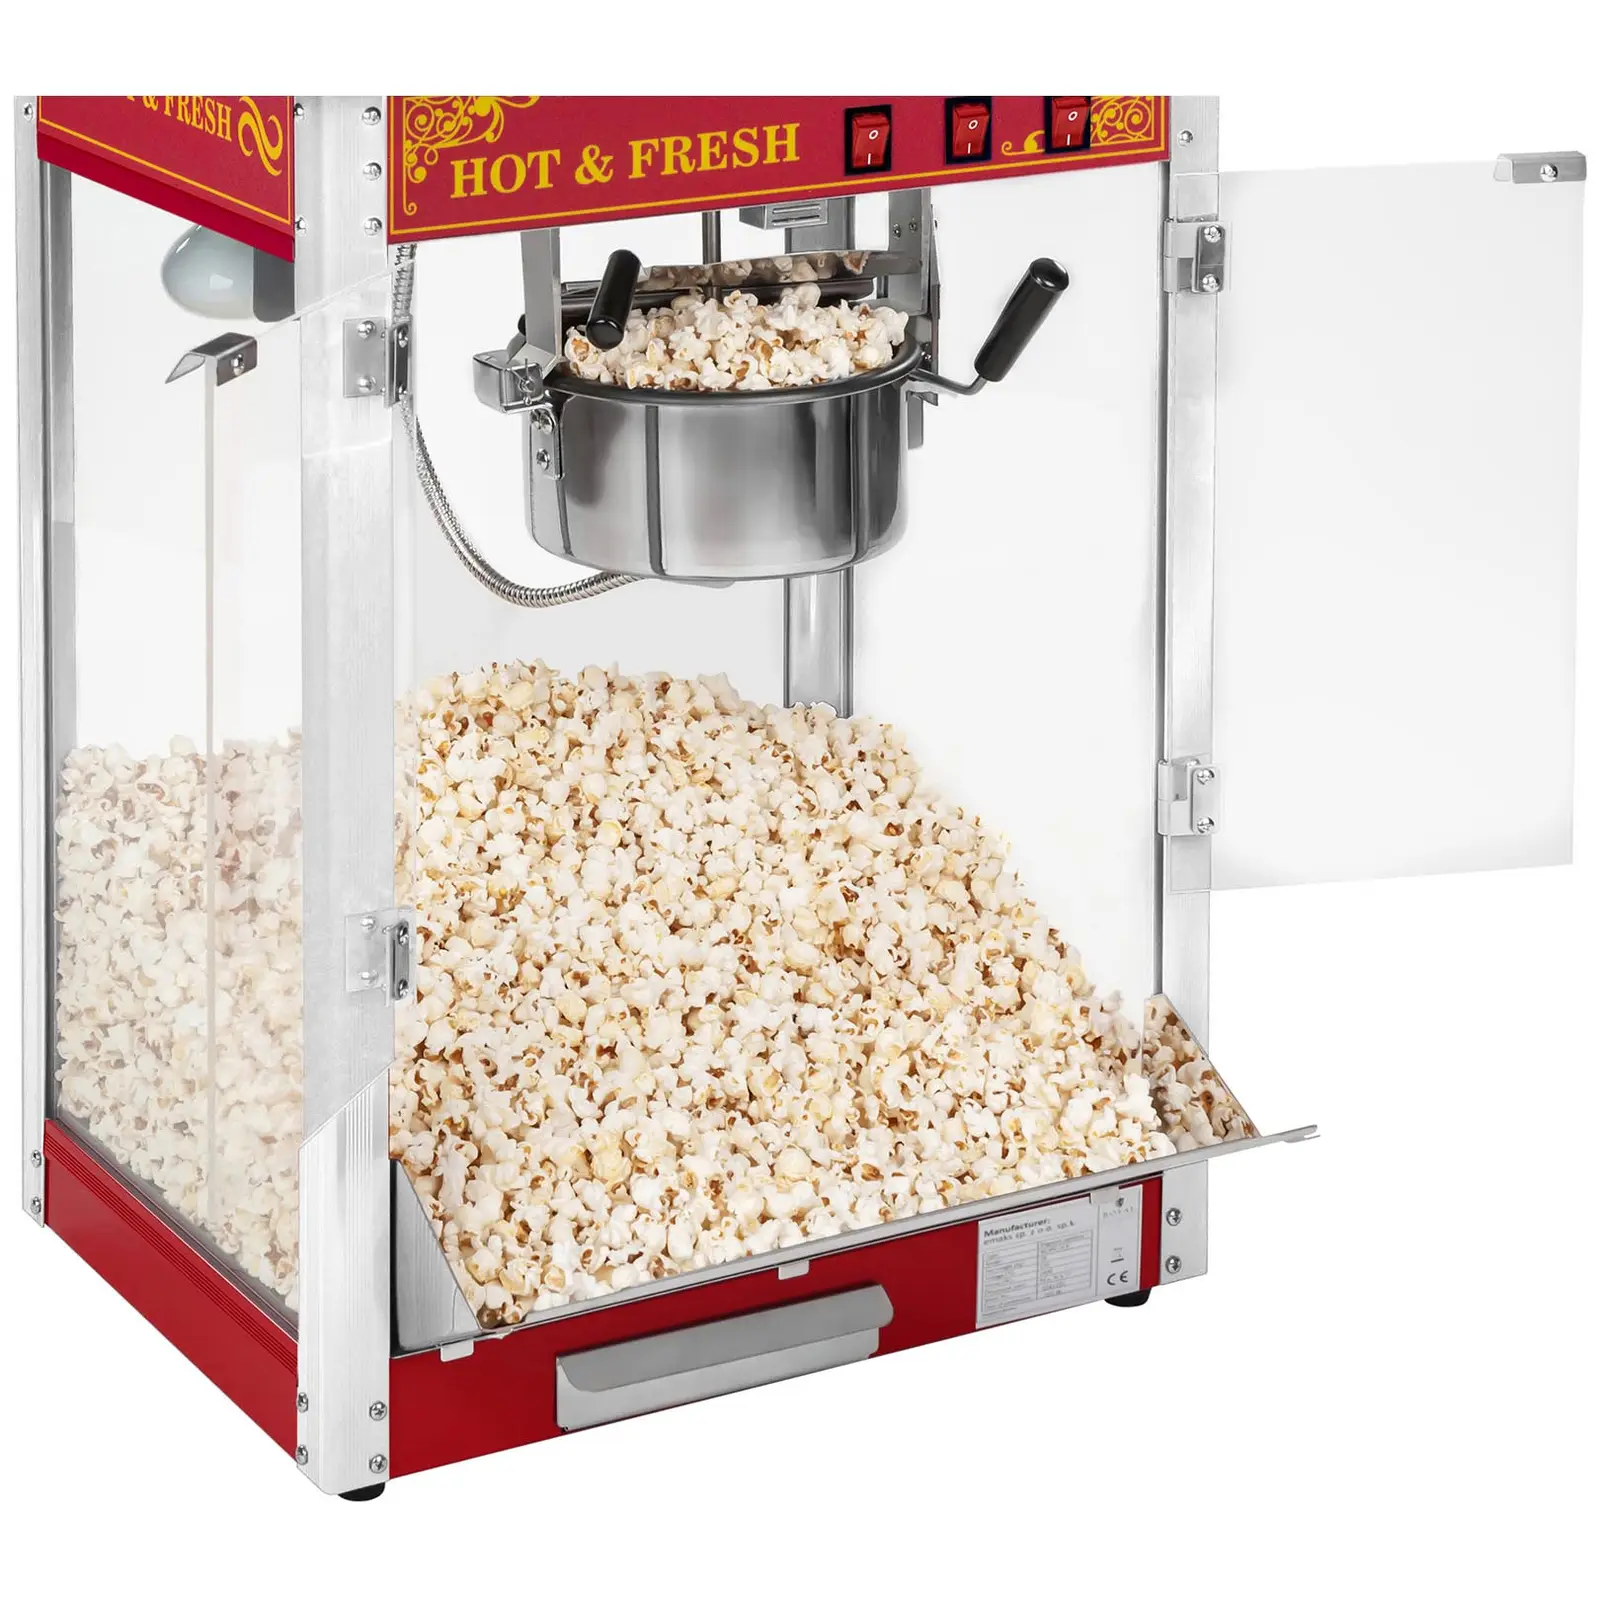 Stroj na popcorn s vozíkem - retro design - červený